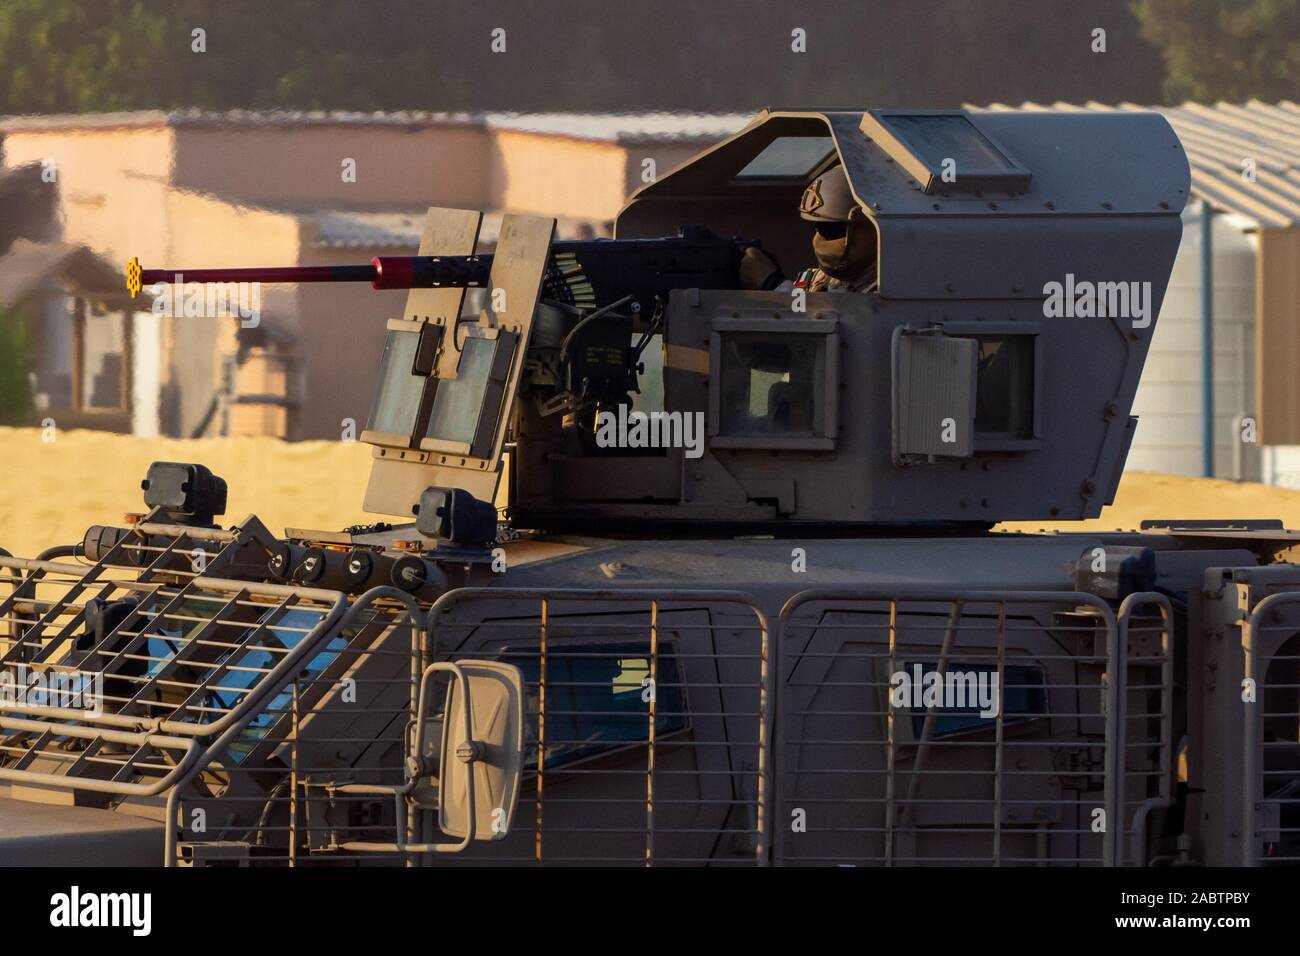 Militärische tank Armee Fahrzeug in der Nähe von Waffen und militärischen Personal zielen und schießen. Militär und Krieg Konzept der Macht, Kraft, Stärke. Stockfoto